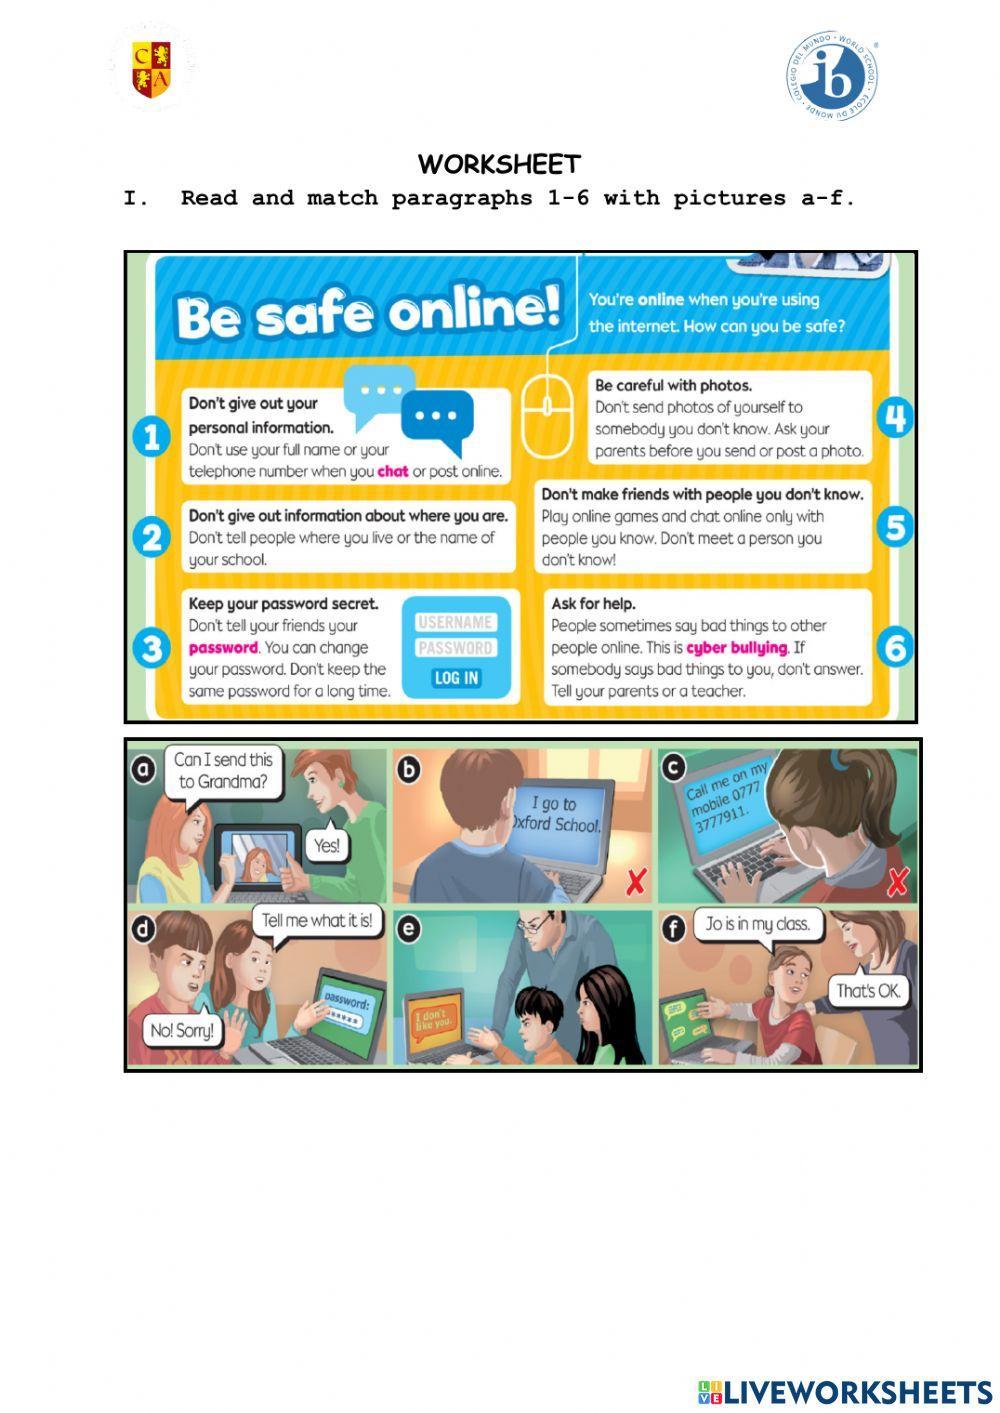 Be safe online!